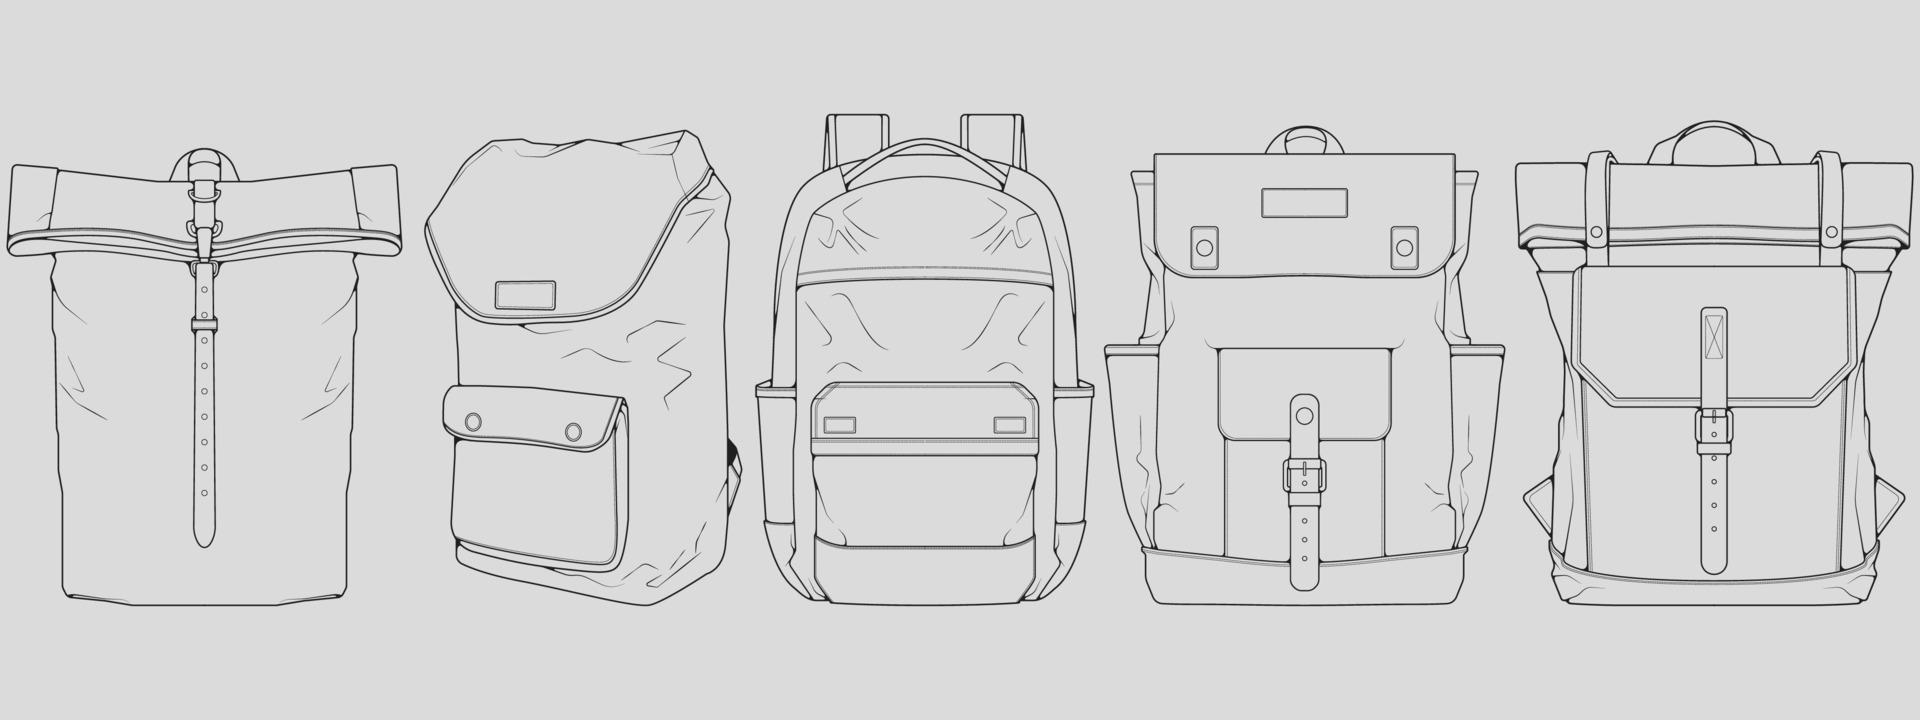 conjunto de vetor de desenho de contorno de mochila, conjunto de mochila em um estilo de desenho, contorno de modelo de treinadores, ilustração vetorial.